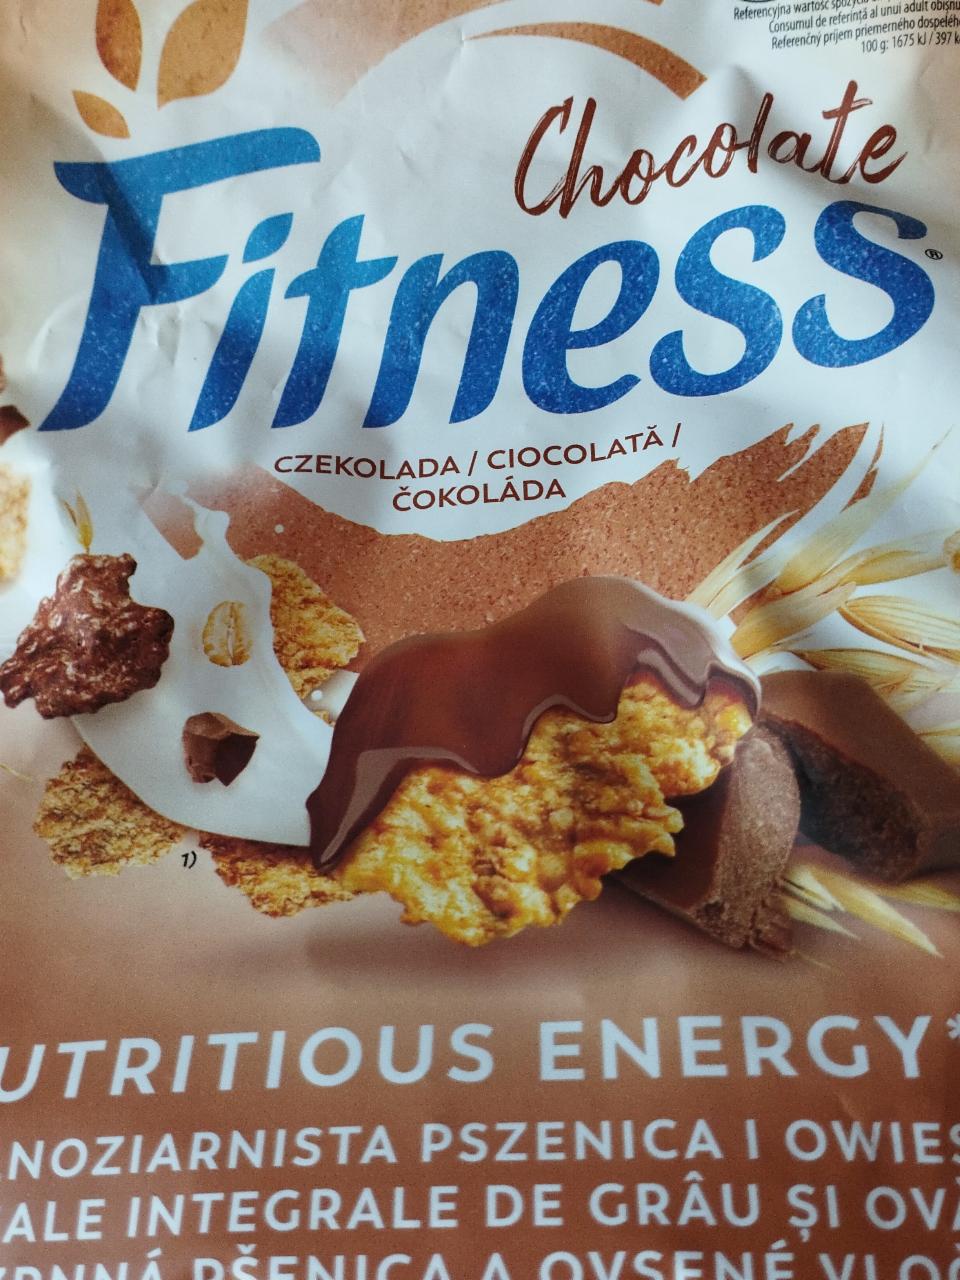 Zdjęcia - Chocolate fitness Nestlé